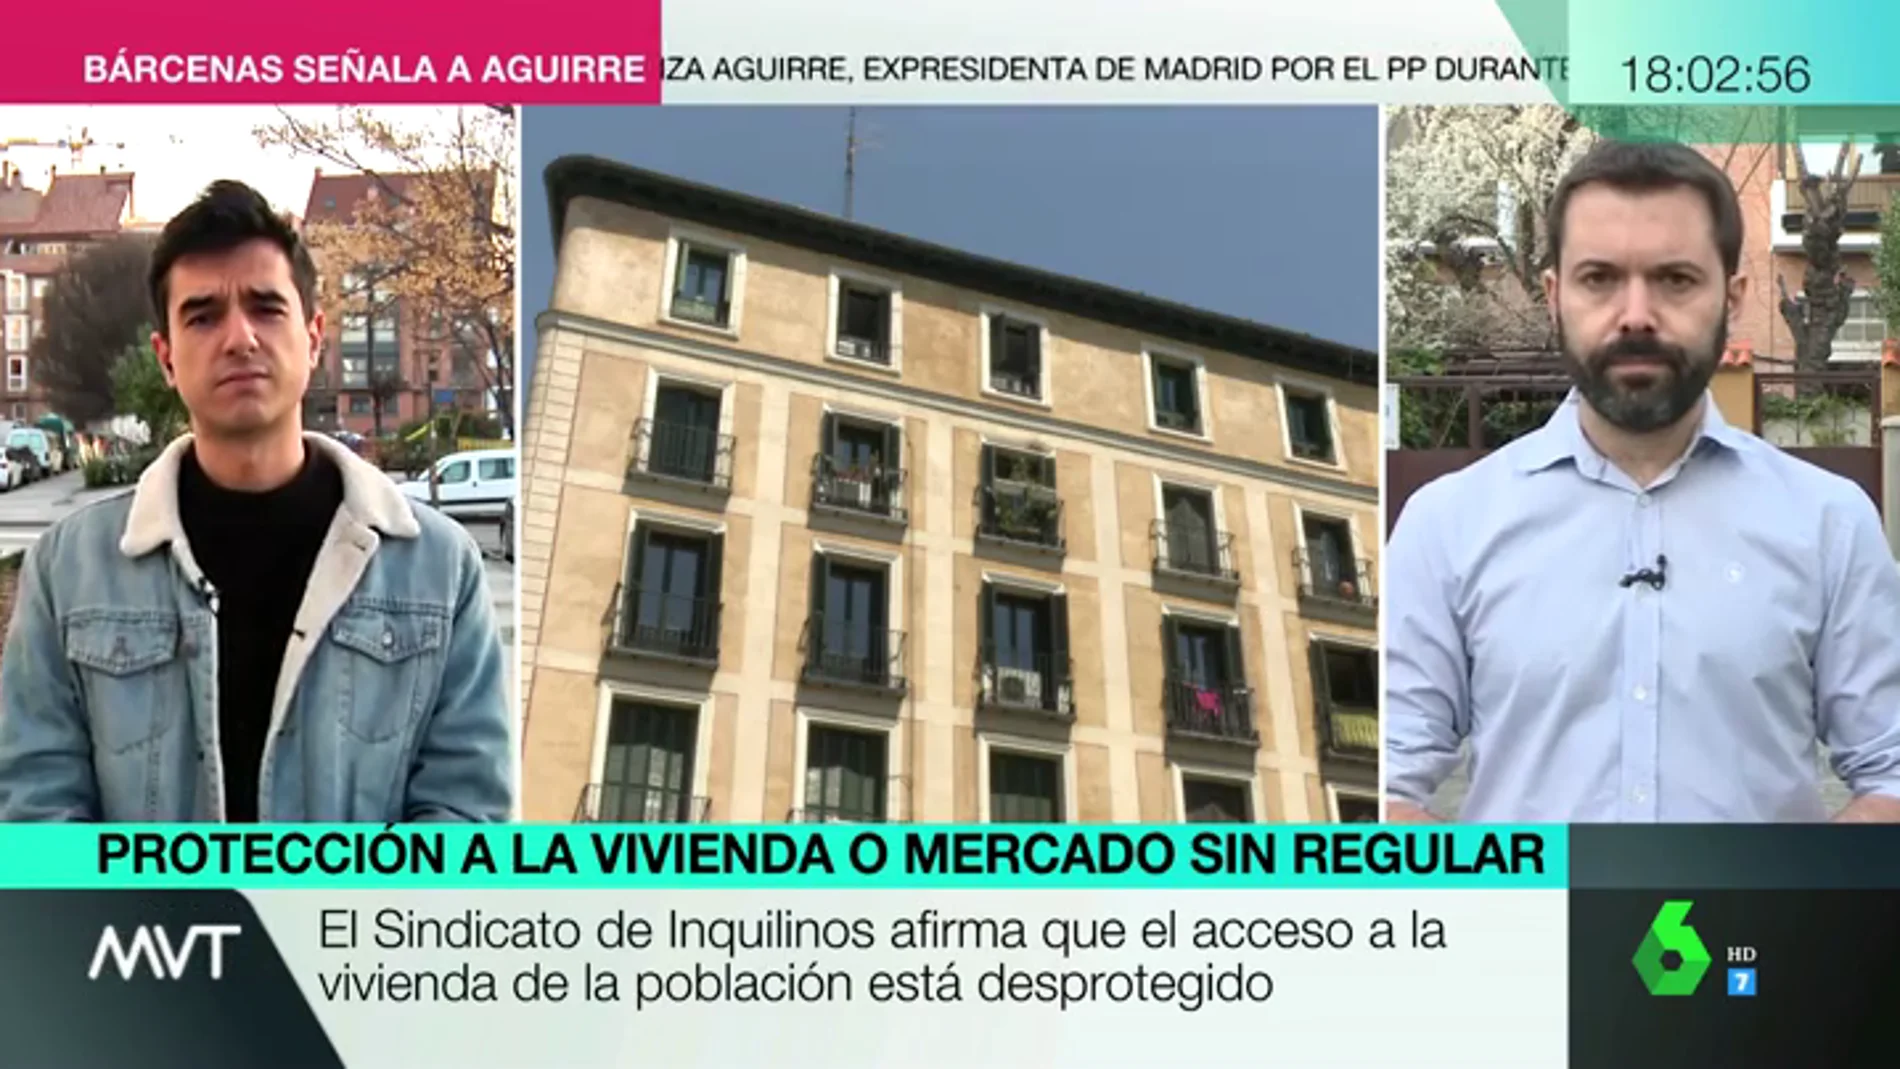 Cara a cara entre el Sindicato de Inquilinos y el economista Juan Ramón Rallo: argumentos a favor y en contra de regular el precio del alquiler